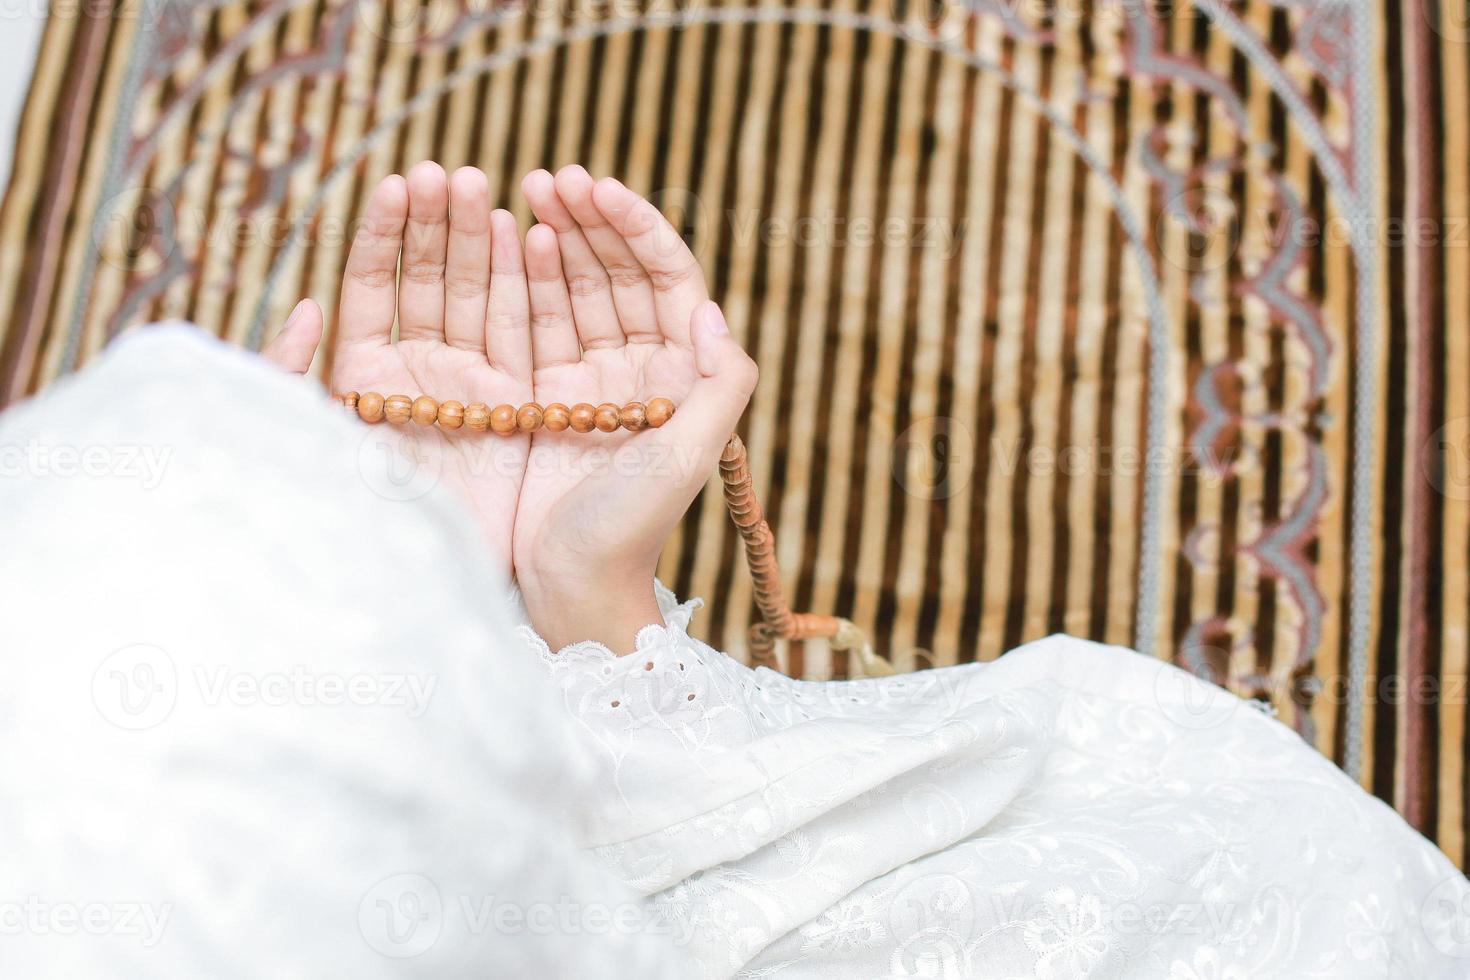 foto von hinten und draufsicht hand einer muslimischen frau mit einer flehenden geste, die zu allah betet, während sie rosenkranzperlen hält